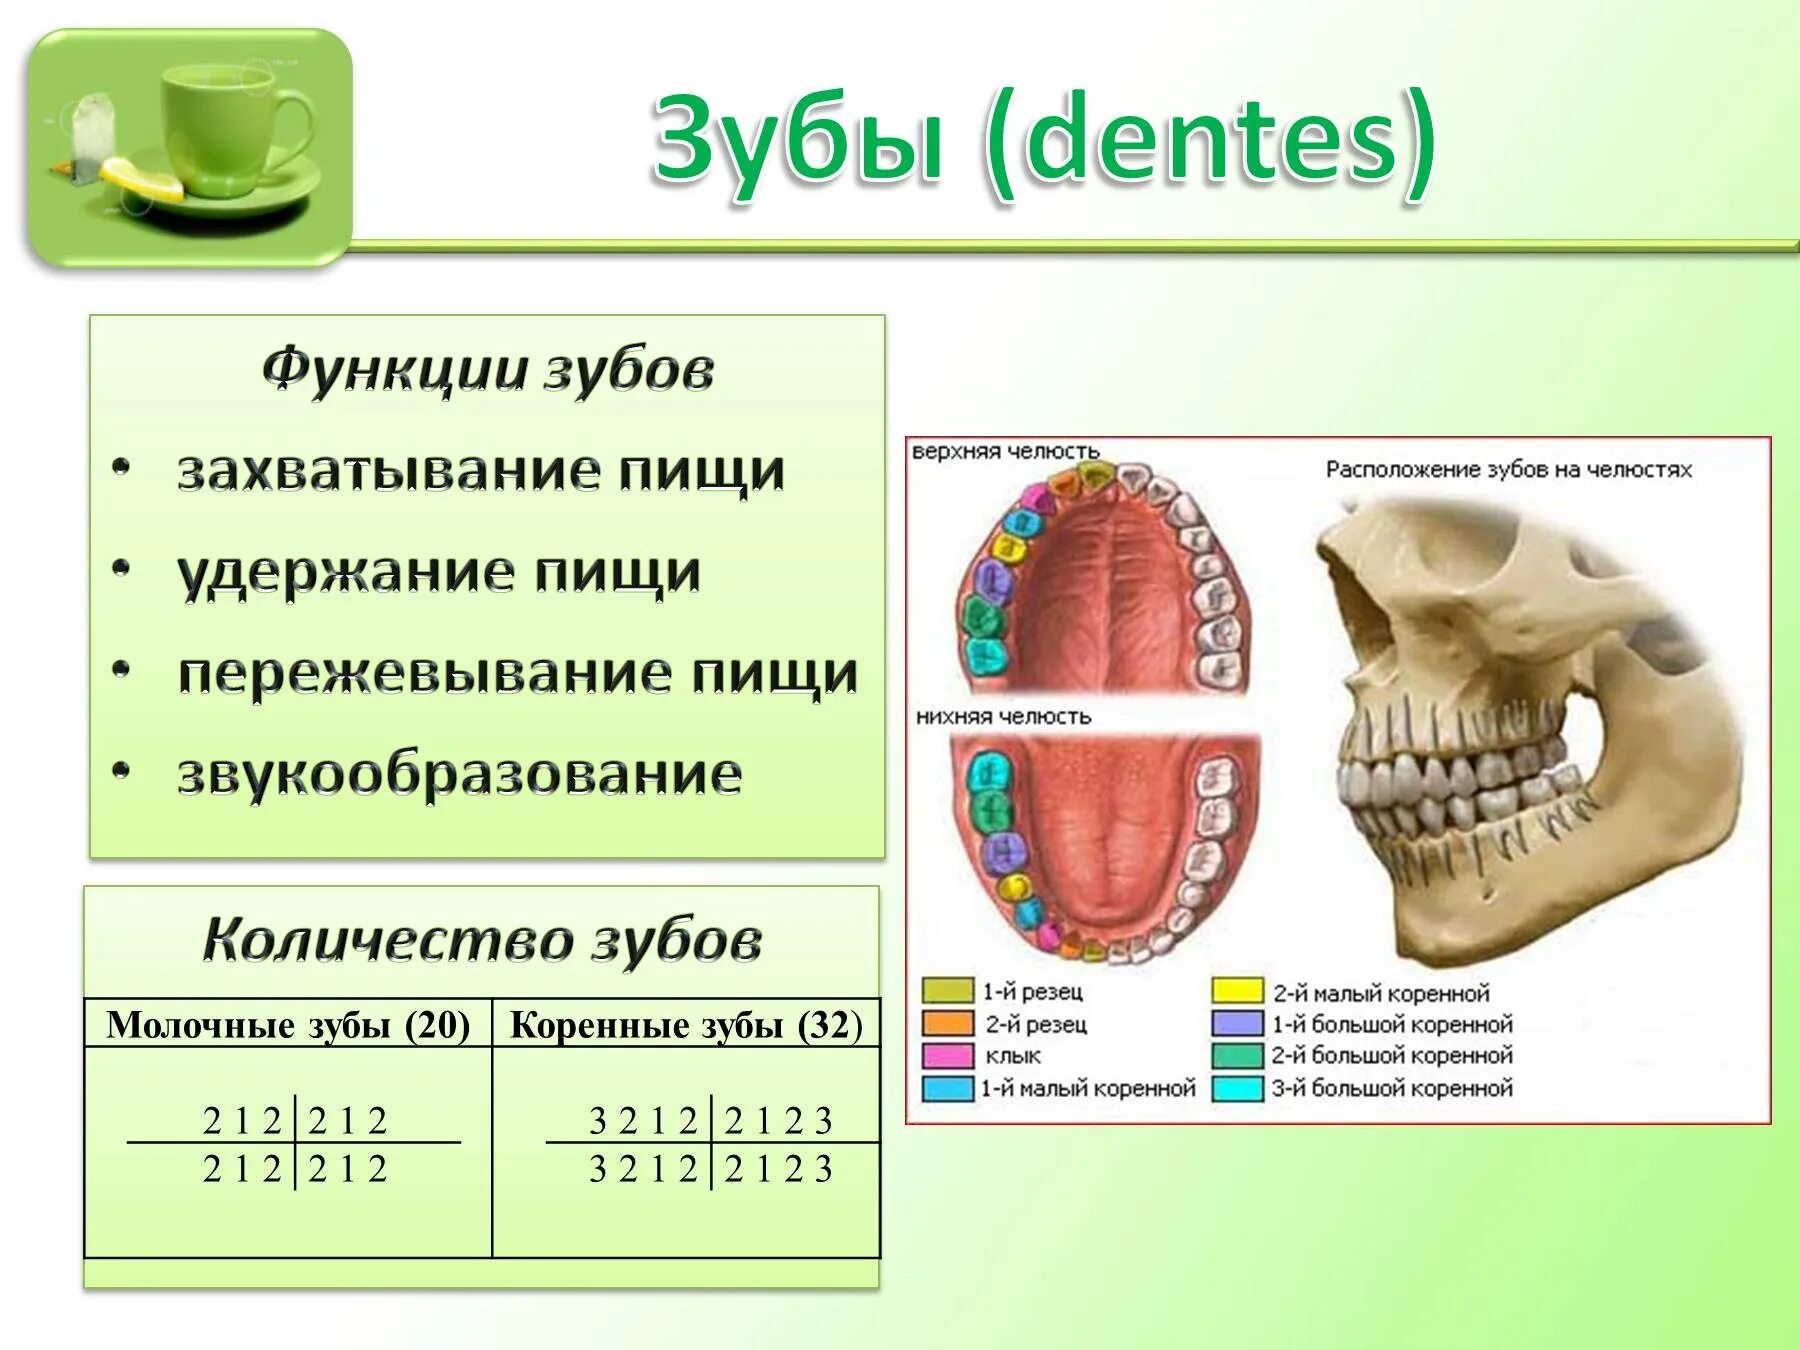 Биология 8 класс пищеварение в ротовой полости. Функции зубов в пищеварении. Строение зуба и функции биология. Зубы строение и функции. Пищеварение в ротовой полости функции